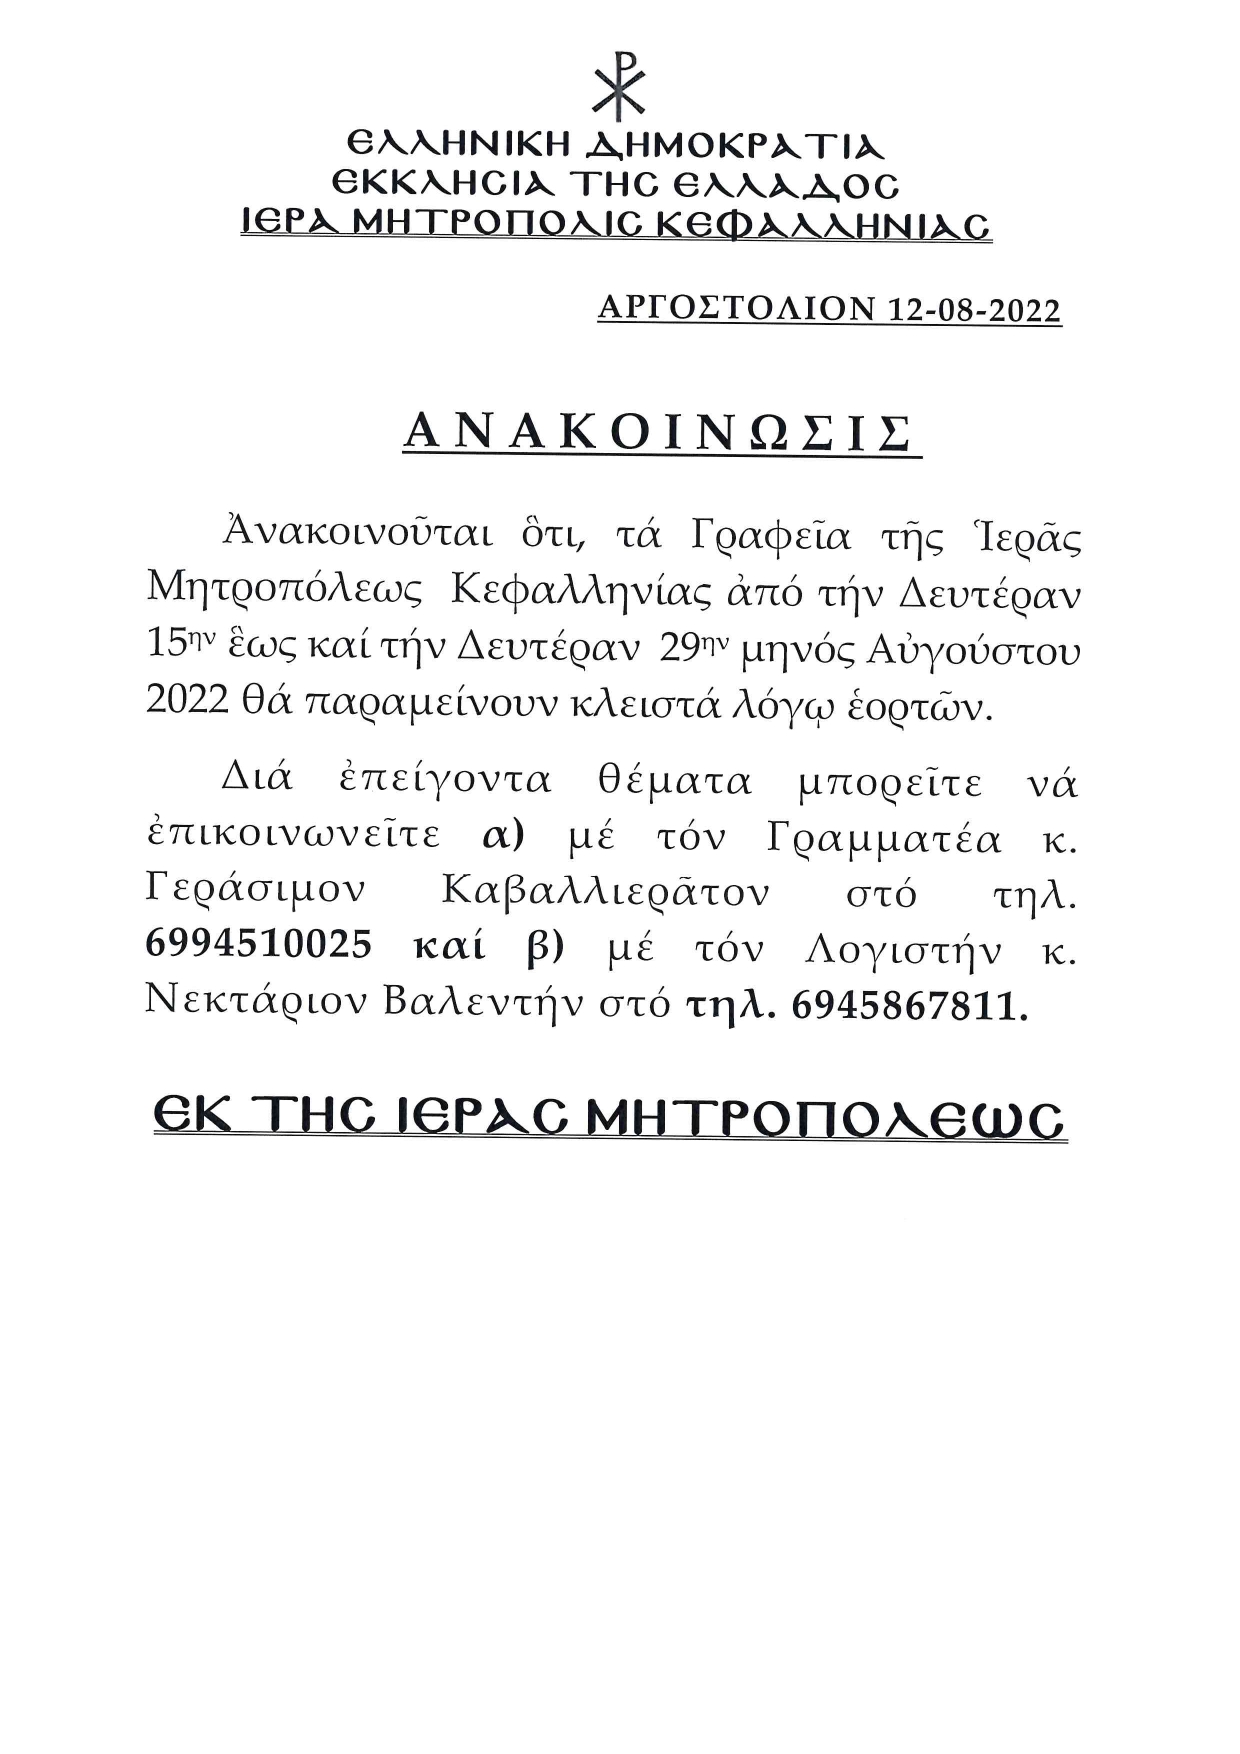 Ανακοινωση κλεισιμο Γραφειων Ι .Μ.Κεφαλληνίας page 0001